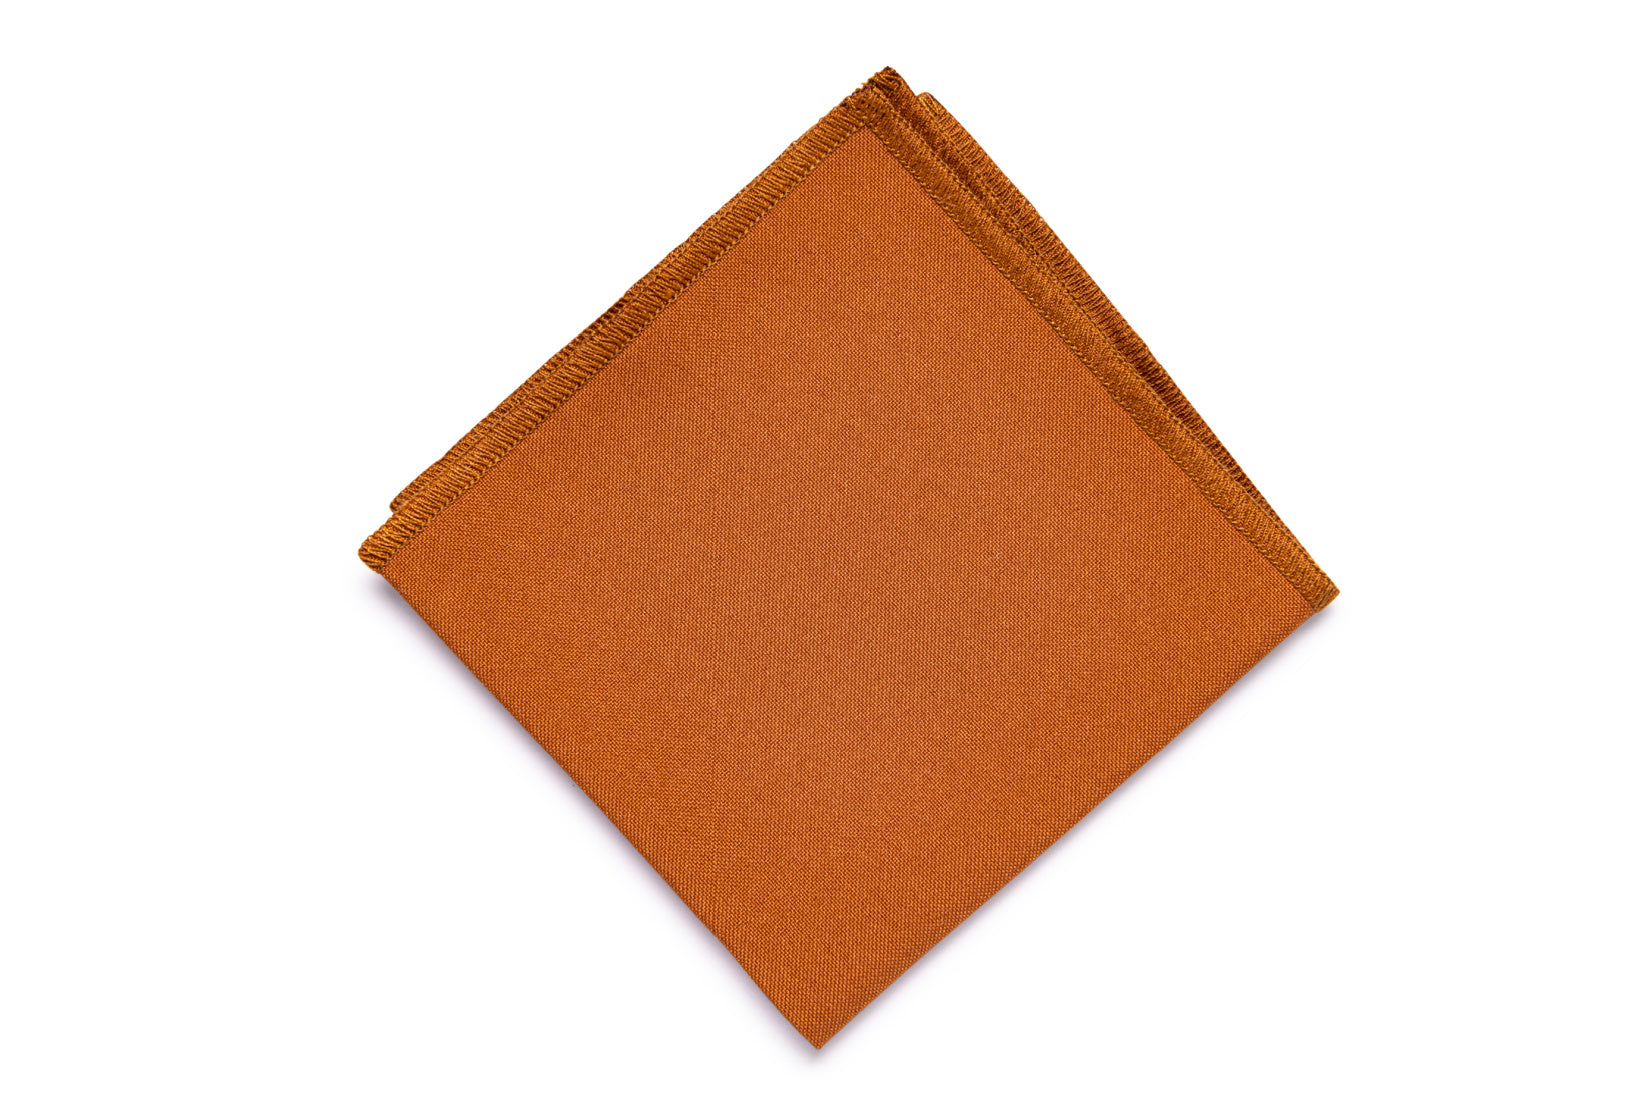 Rusty copper pocket square